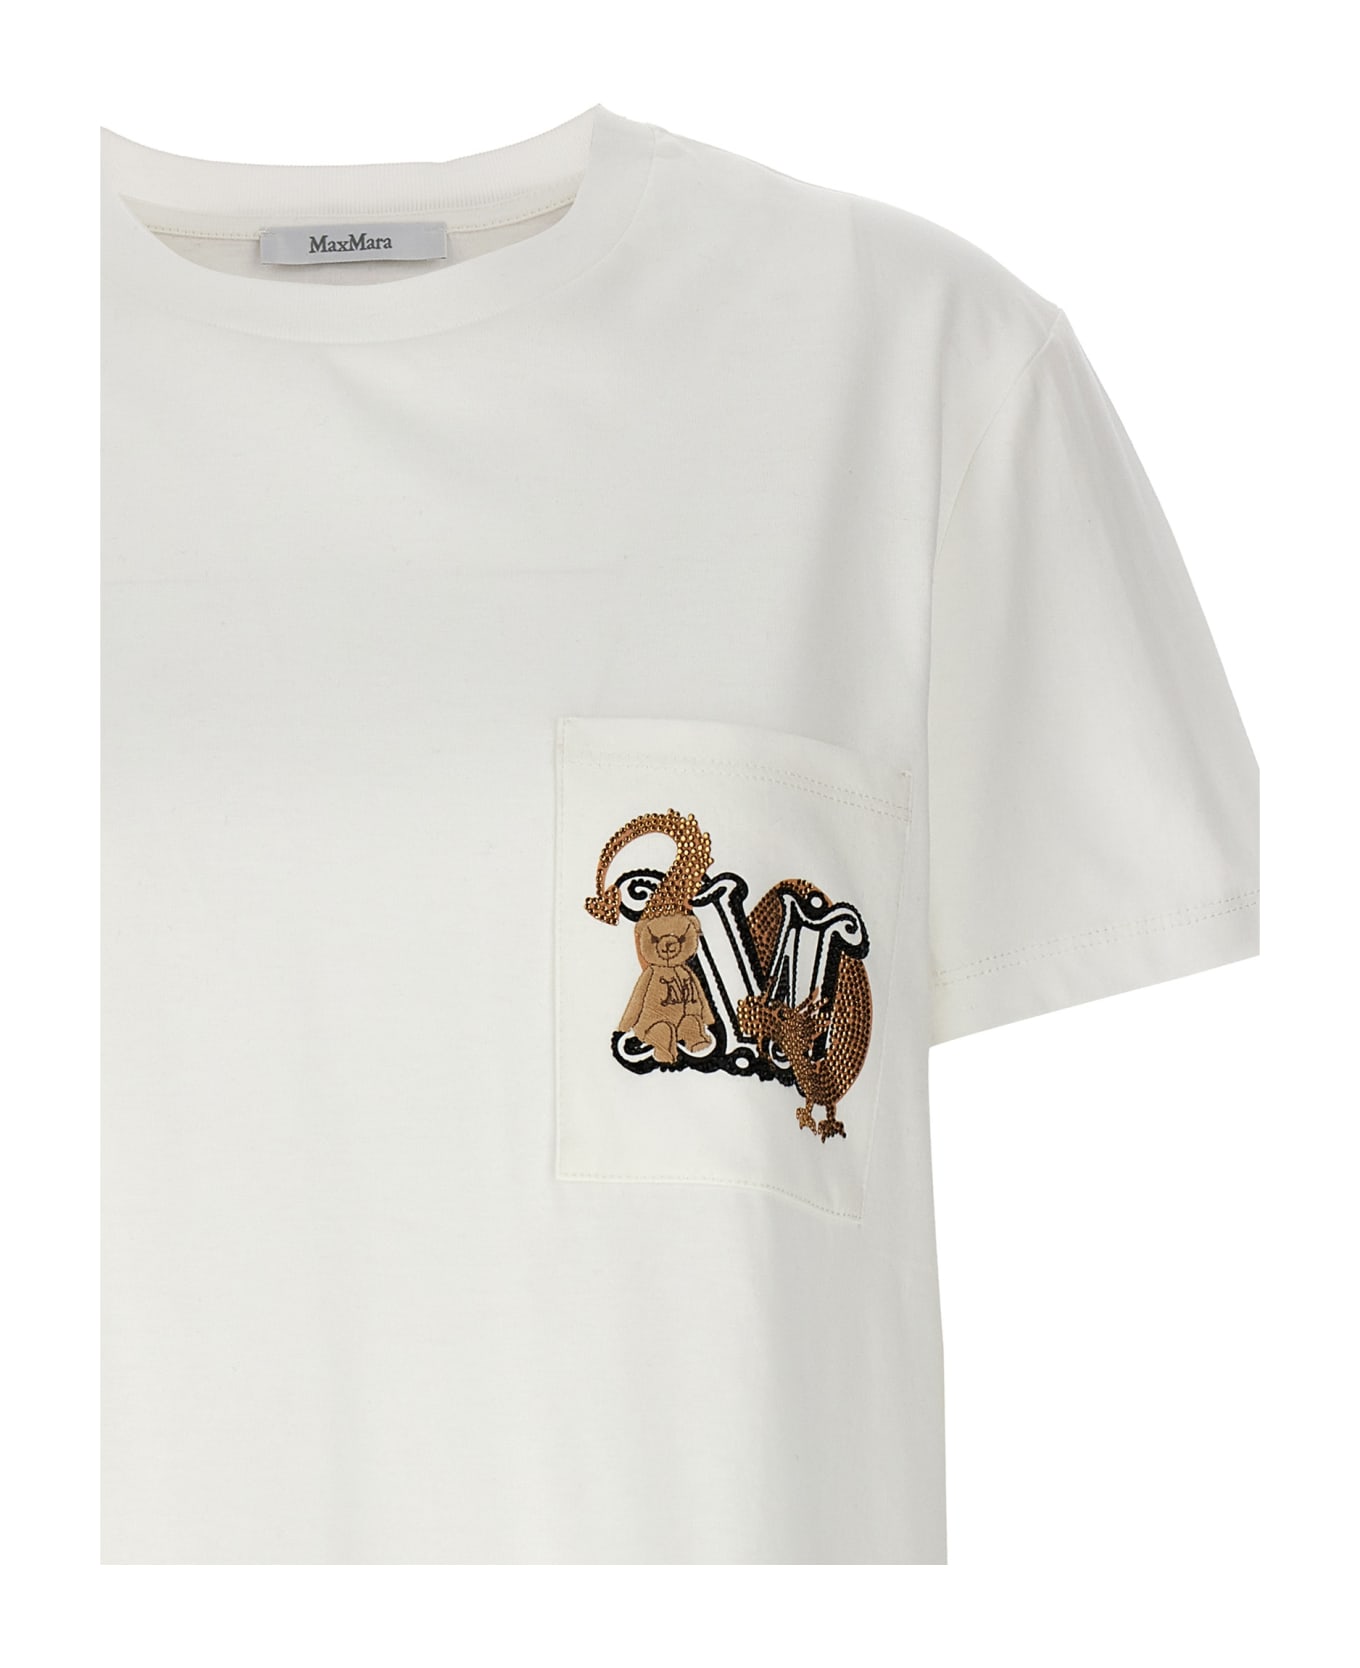 Max Mara 'elmo' T-shirt - White